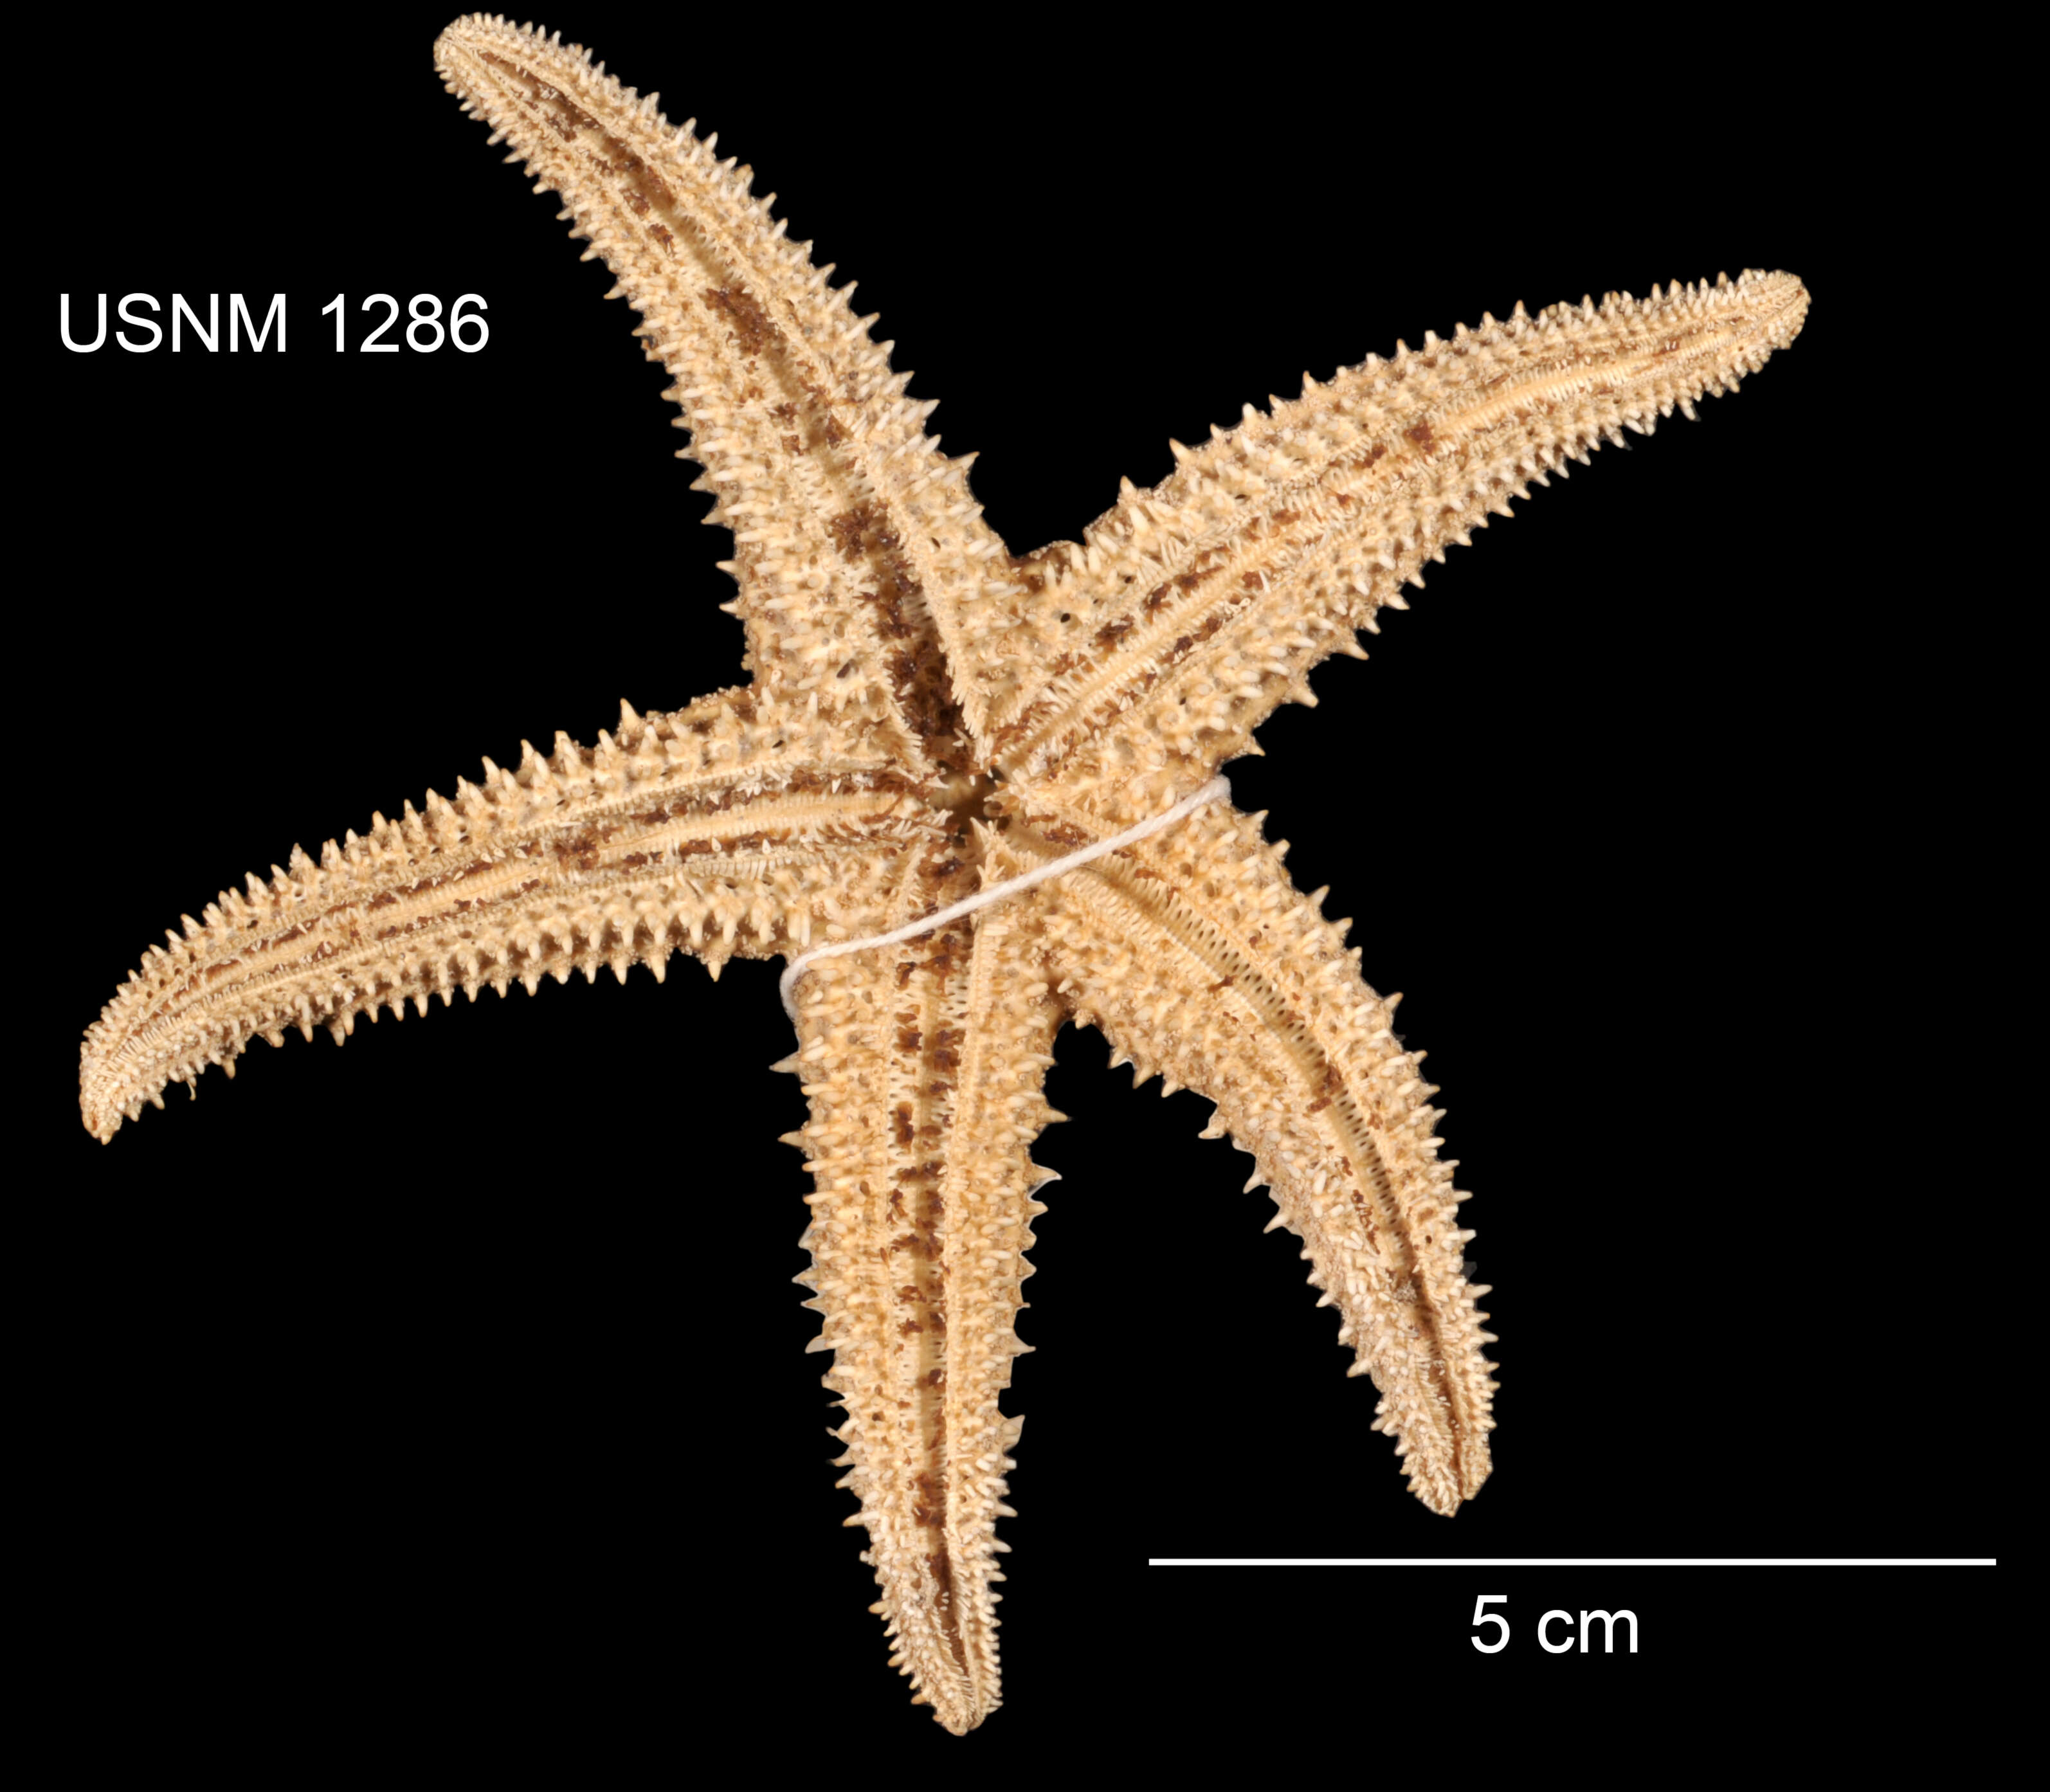 Image of Asterias paucispina Stimpson 1862